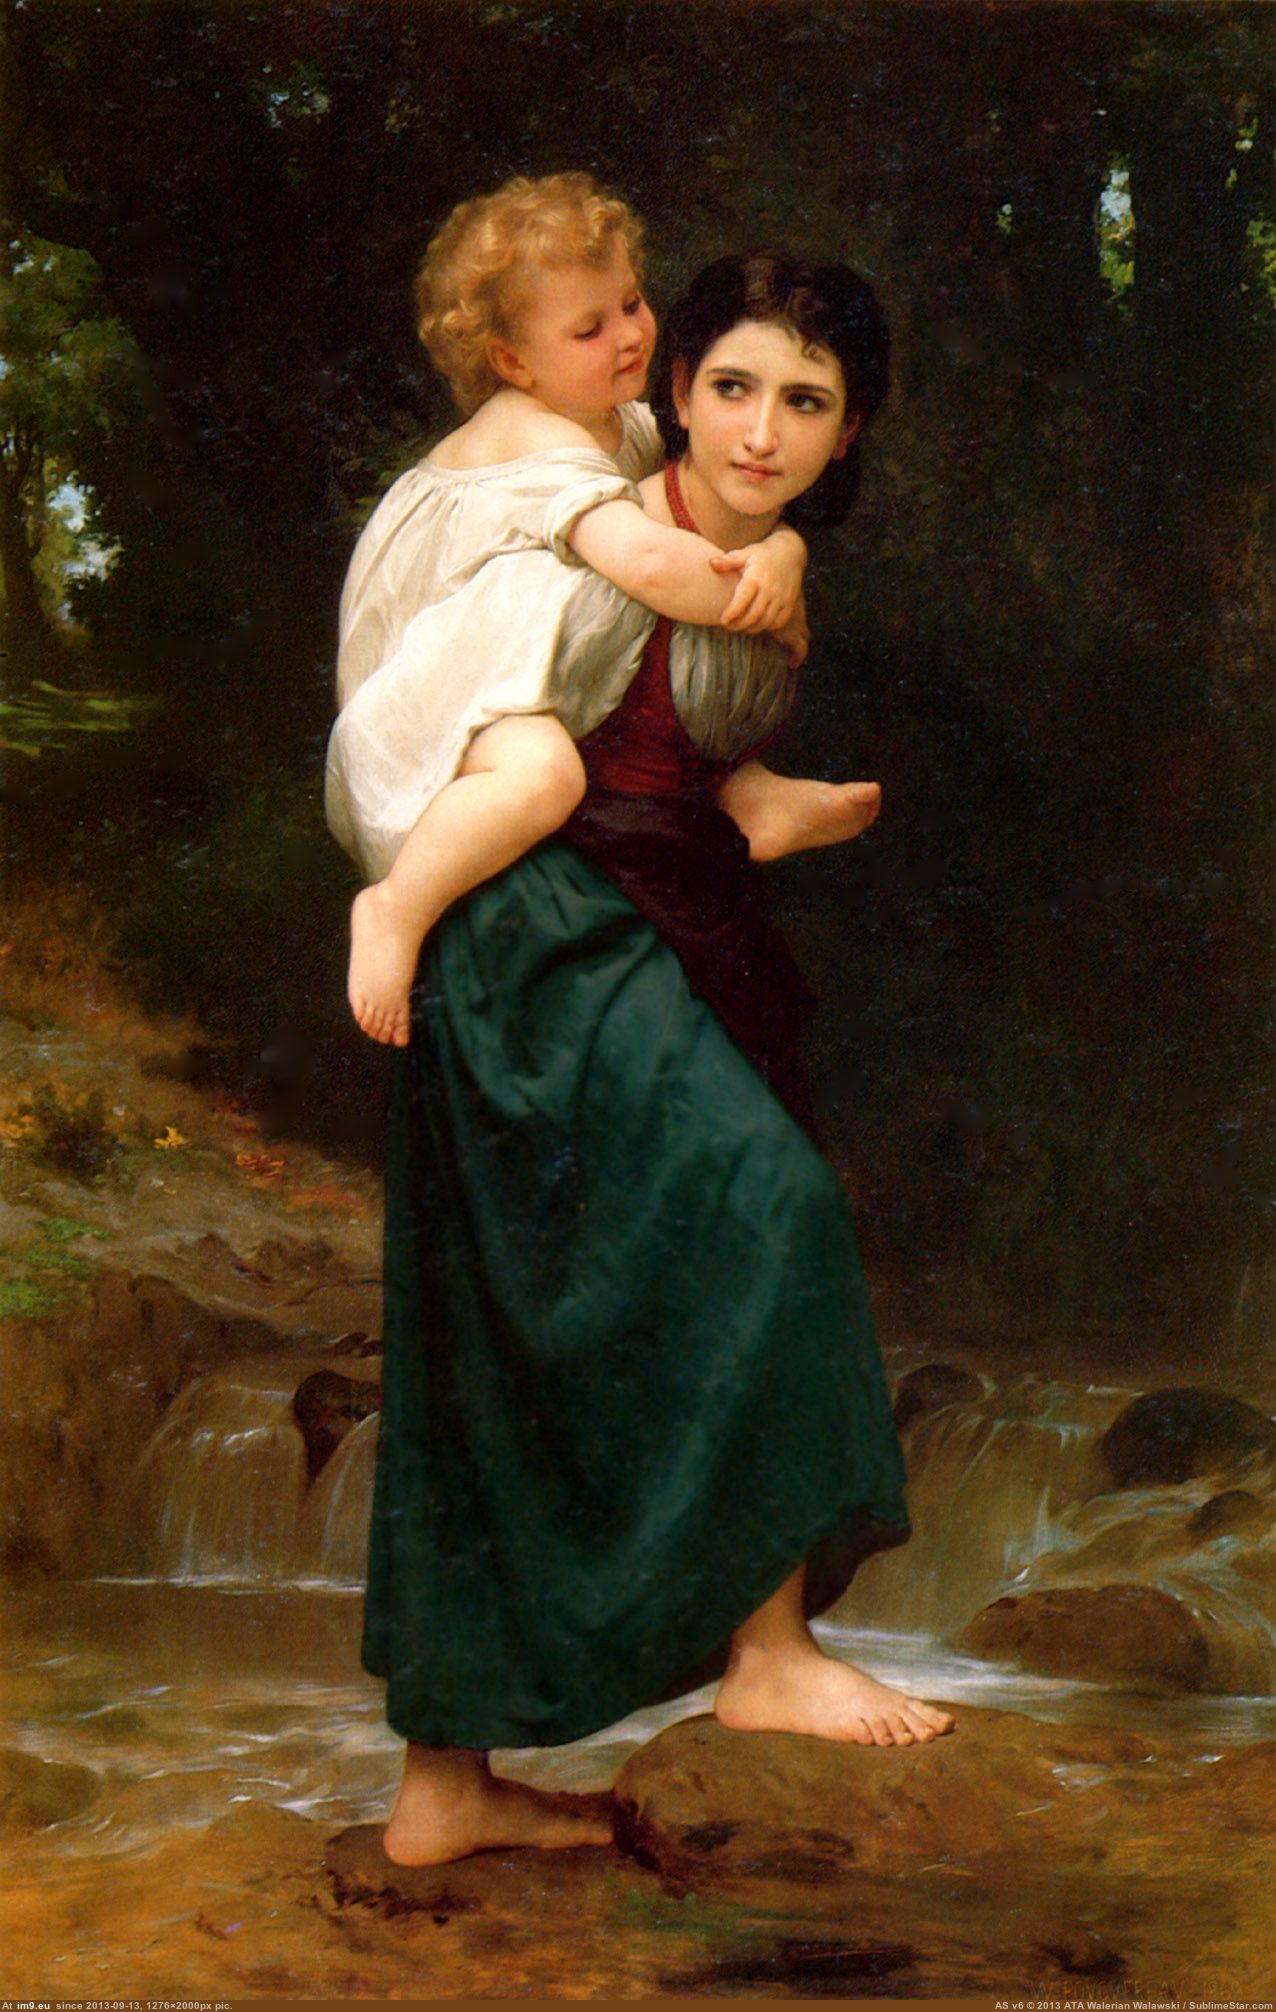 Le Passage Du Gue - William Adolphe Bouguereau (in William Adolphe Bouguereau paintings (1825-1905))